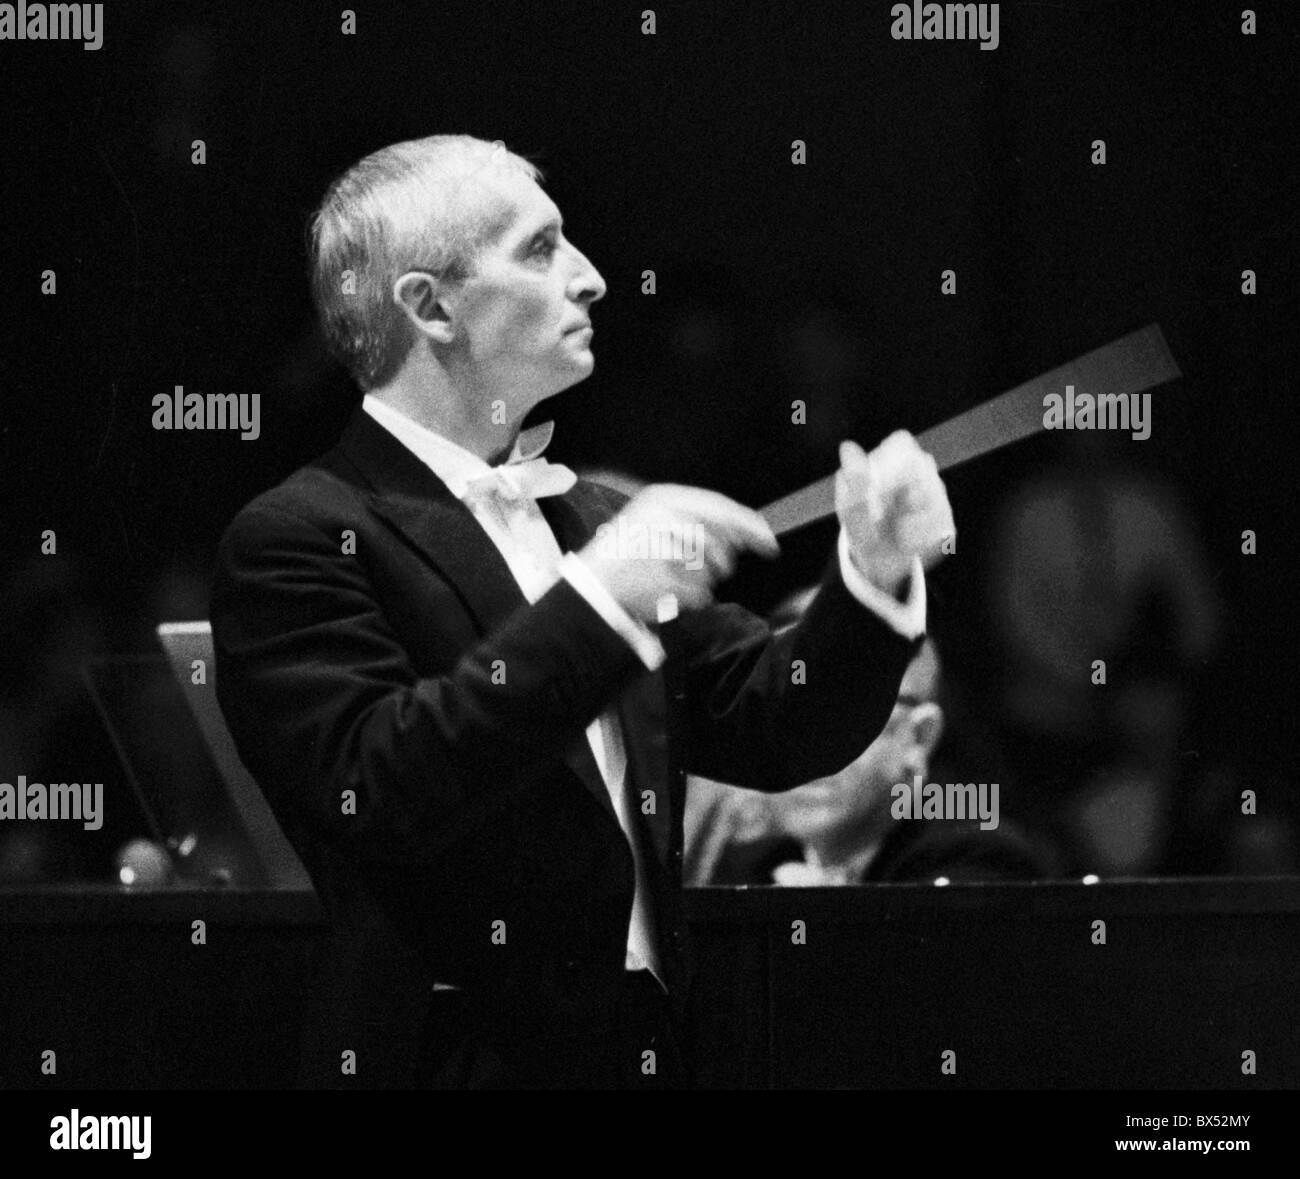 Direttore principale dell'Orchestra Filarmonica Ceca Vaclav Neumann, novembre 1968. CTK foto/Jiri Karas Foto Stock